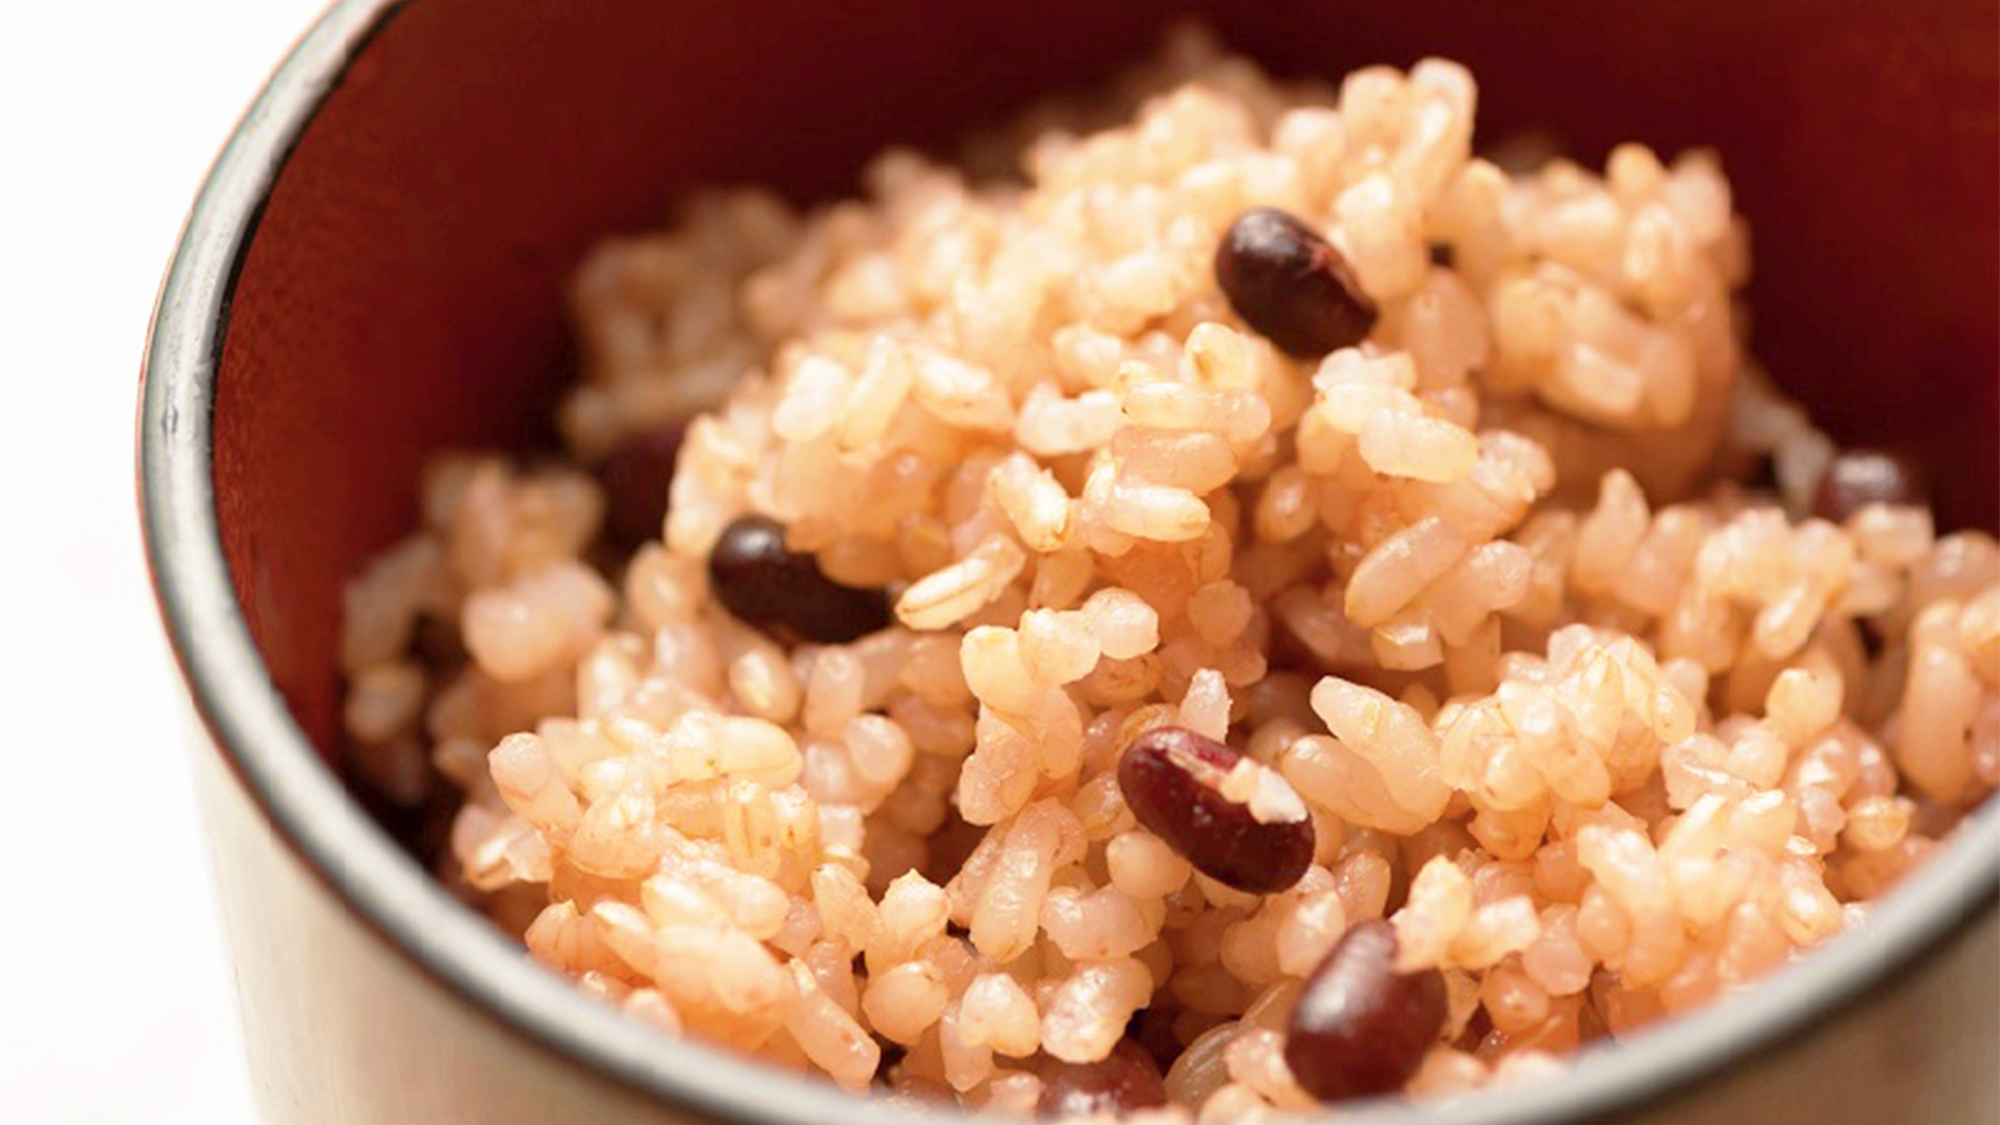 【玄米オプション】ご飯をオプションで玄米に変更することができます。噛むほどに甘い玄米